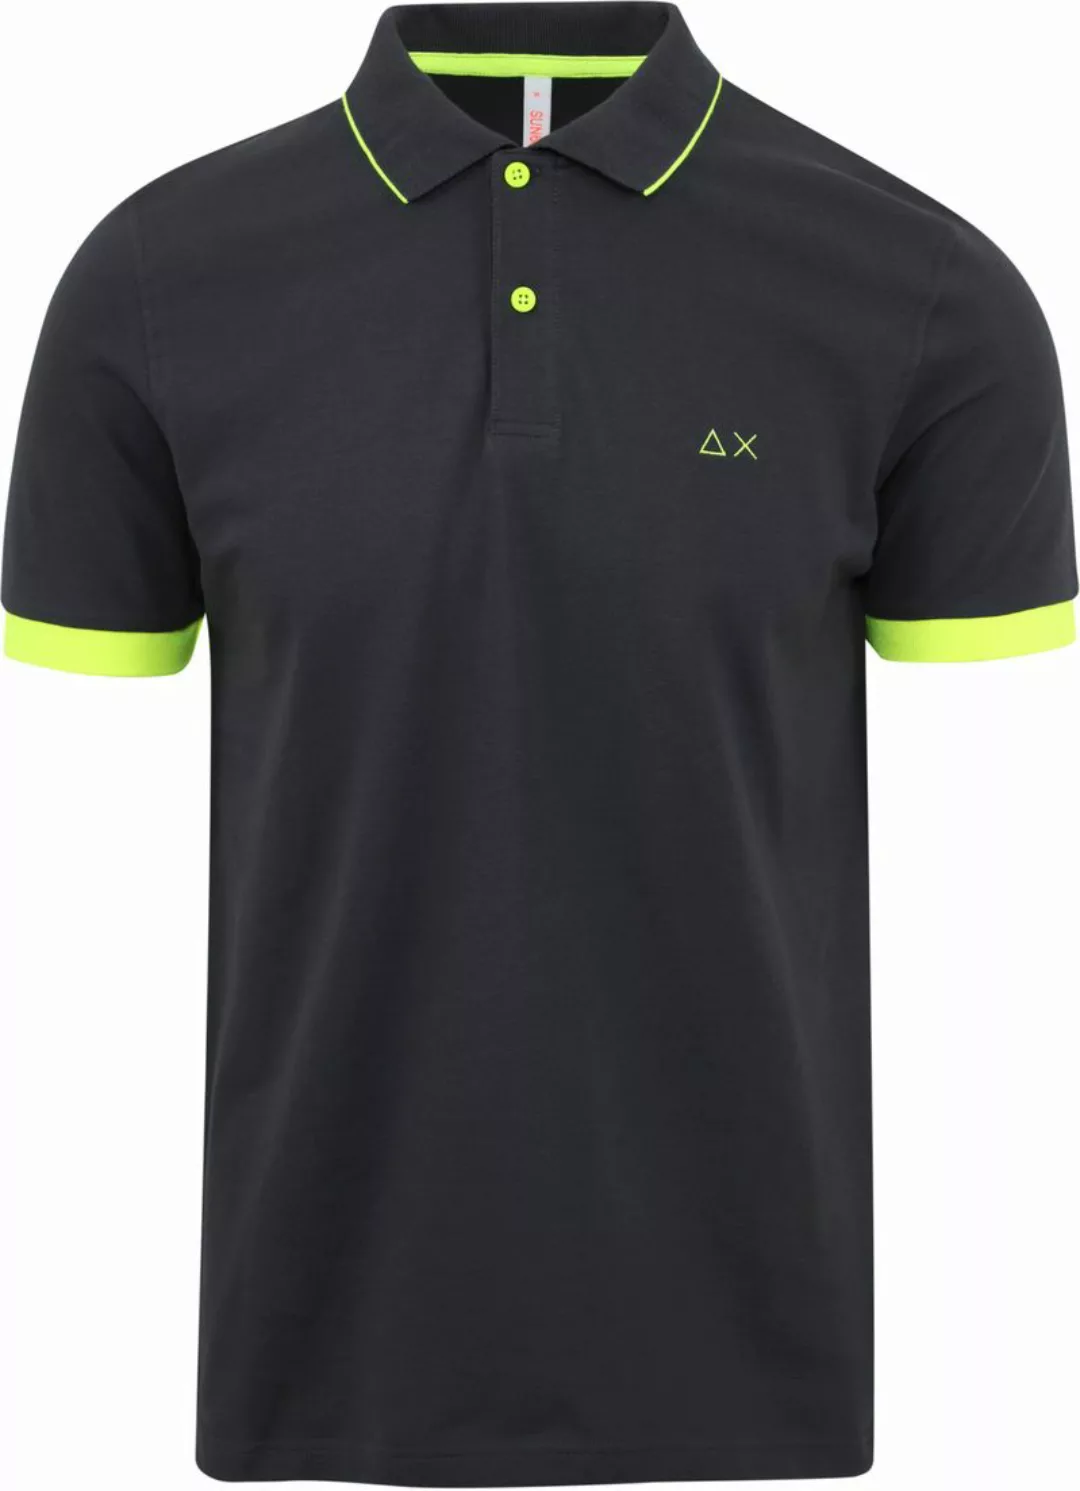 Sun68 Poloshirt Stripe Neongelb-Anthrazit - Größe XXL günstig online kaufen